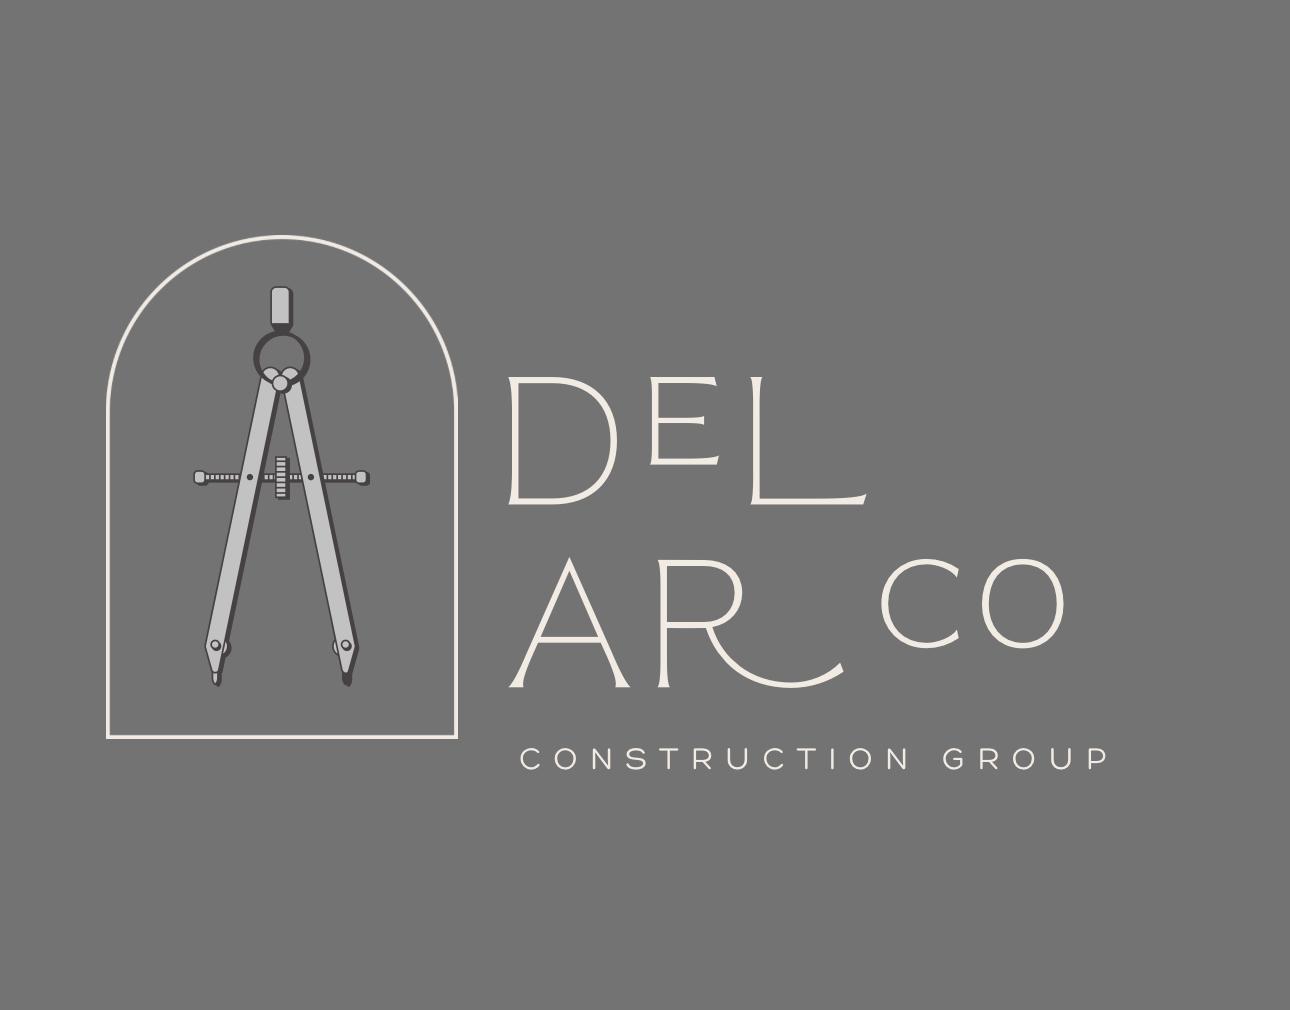 Del Arco Construction Logo